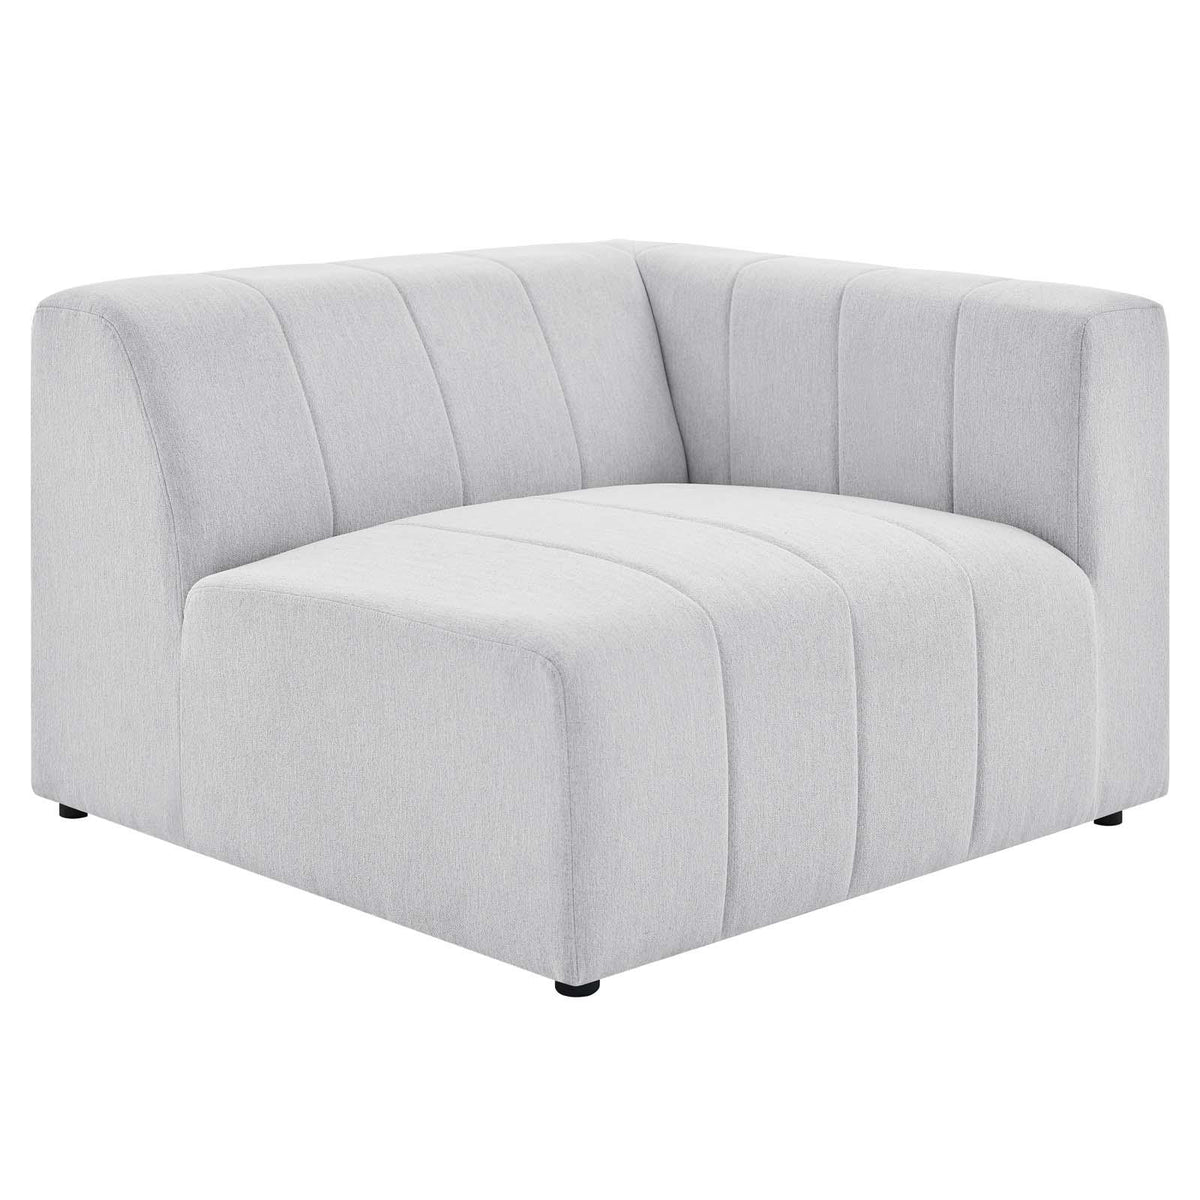 Modway Furniture Modern Bartlett Upholstered Fabric 4-Piece Sectional Sofa - EEI-4518